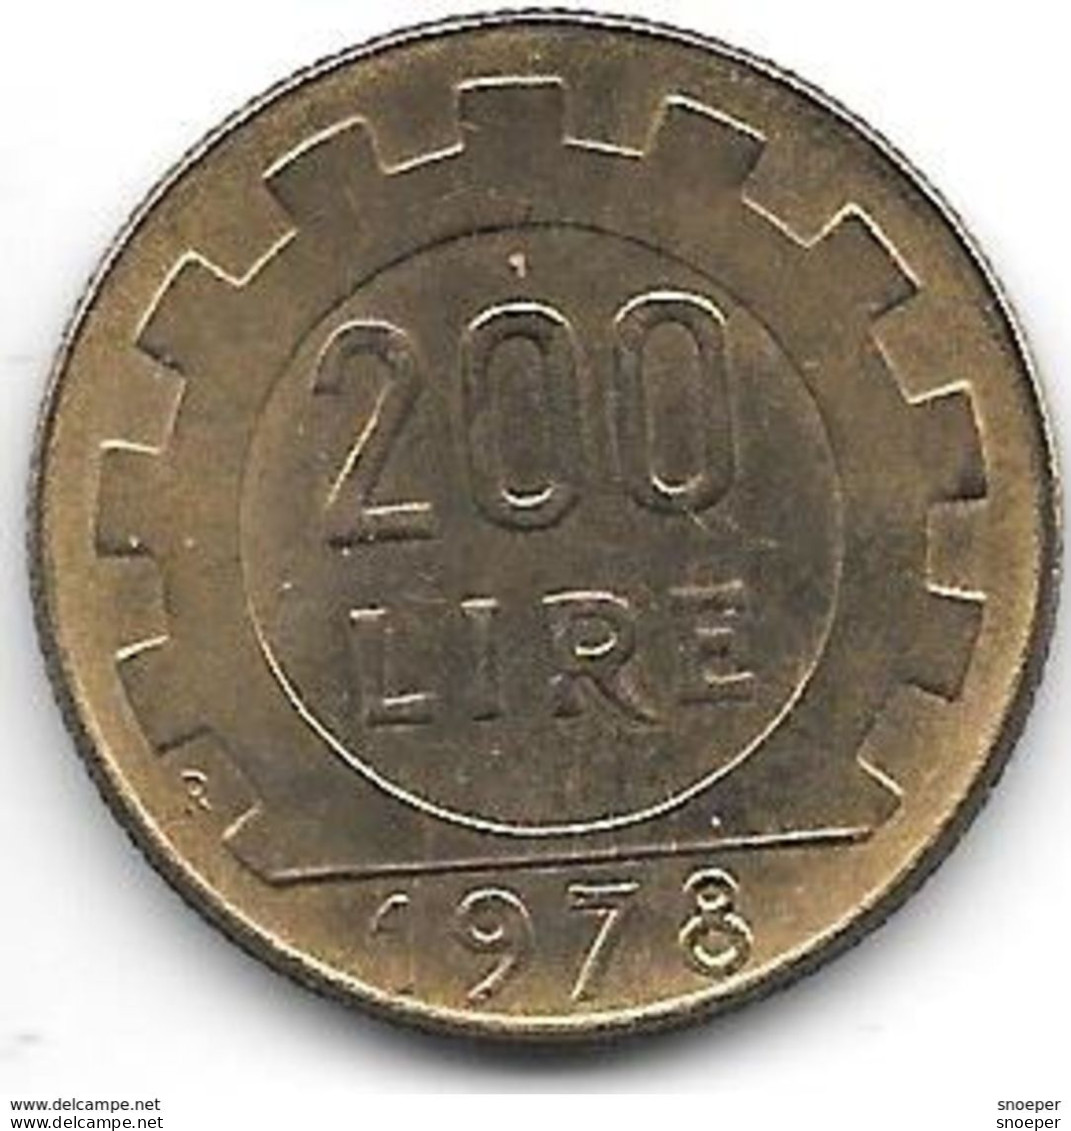 Italy 200 Lire 1978  Km 105 Xf+/ms60 - 200 Liras